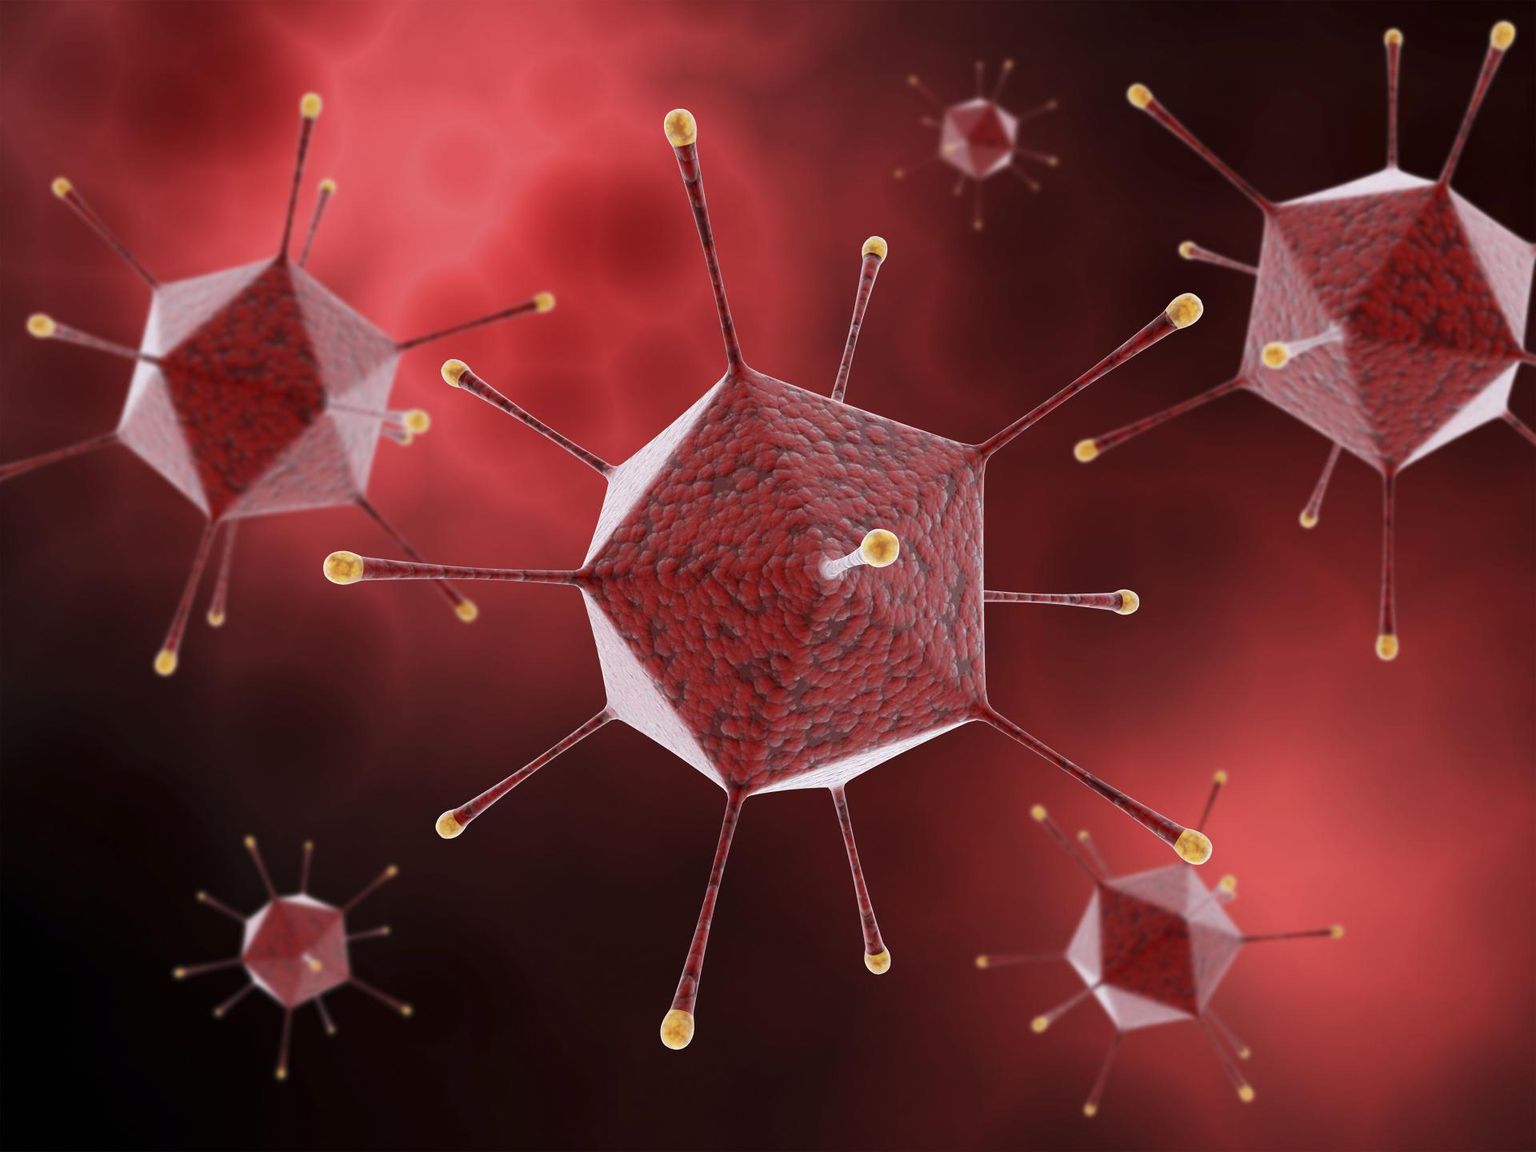 Adenoviiruse arvutigraafiline esitlus. Omalaadse meremiinina turritavate valgutundlatega adenoviirused on levinud nakatajad. Vaktsiini saamiseks vahetatakse pärilikkusaines viirust paljundav osa koronaviiruse ogavalku tootmist kirjeldavate DNA-juhtnööridega.